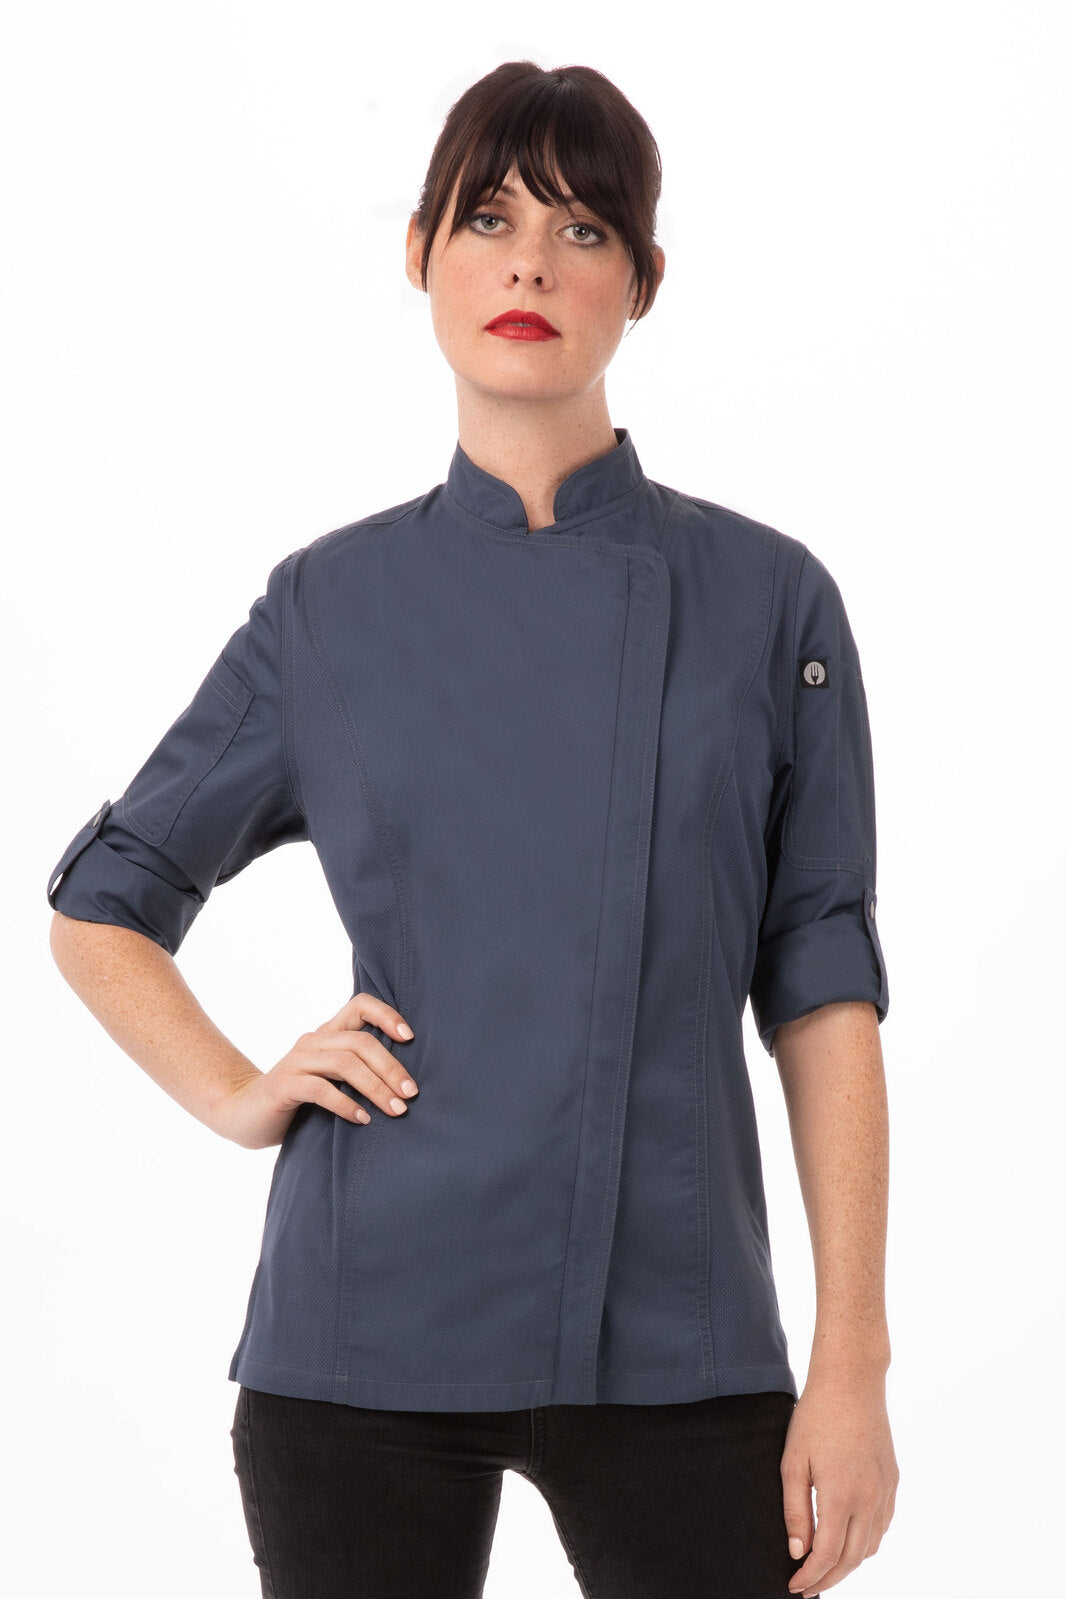 Chef Works - Hartford Women Chef Jacket